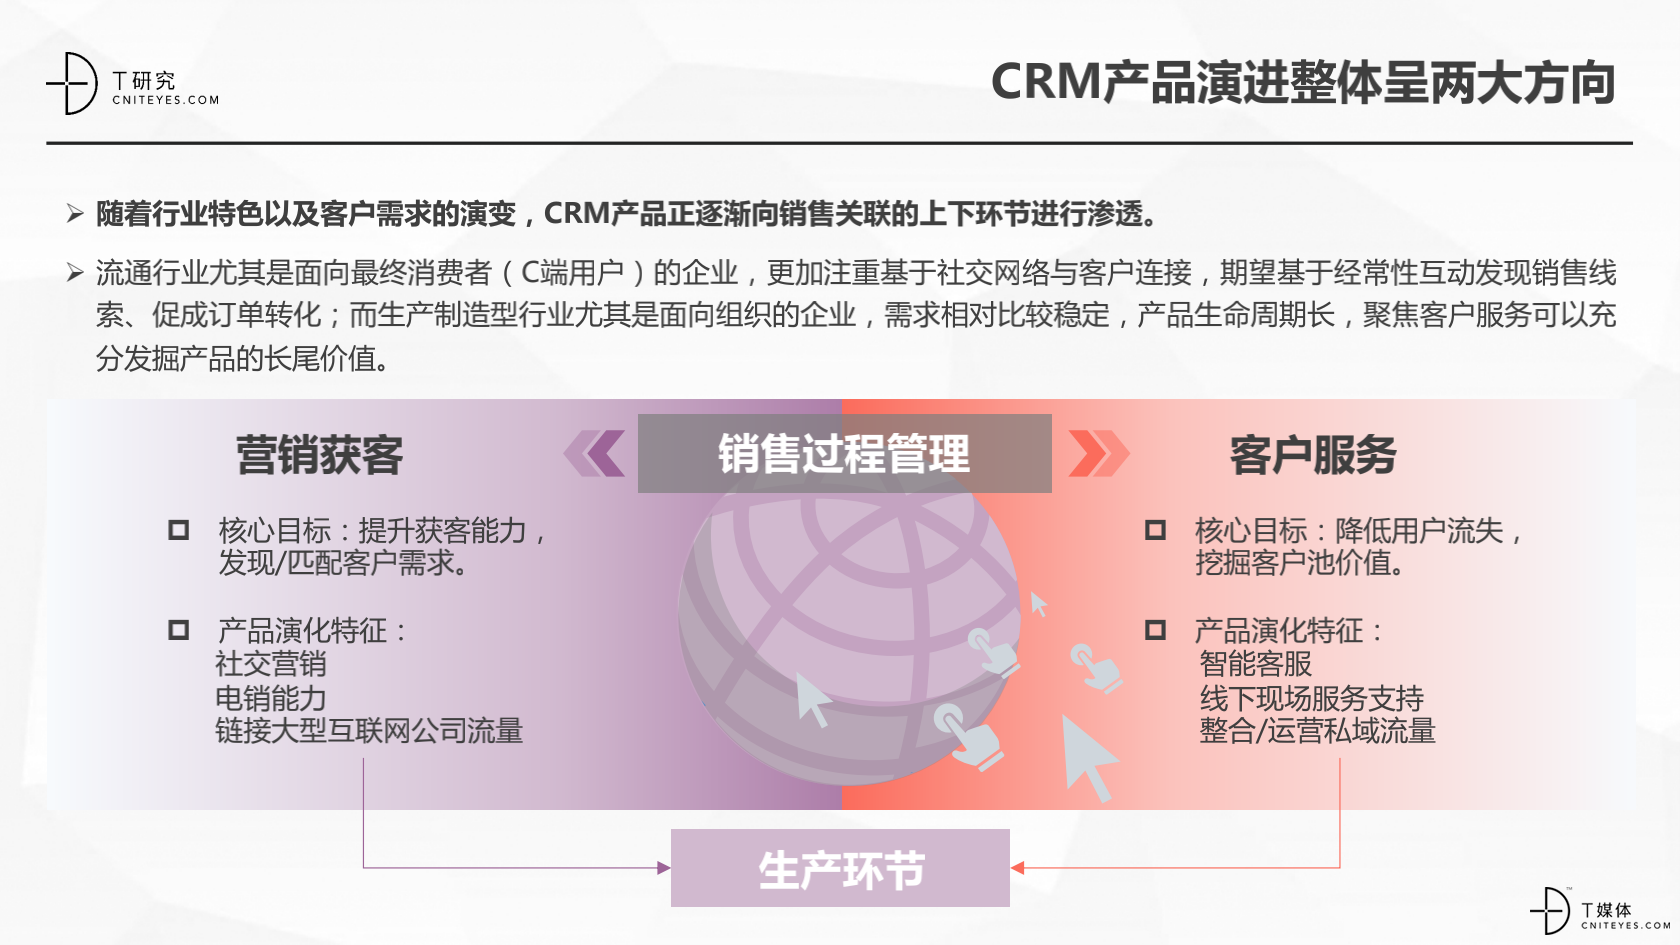 2_2020中国CRM指数测评报告v1.5_44.png